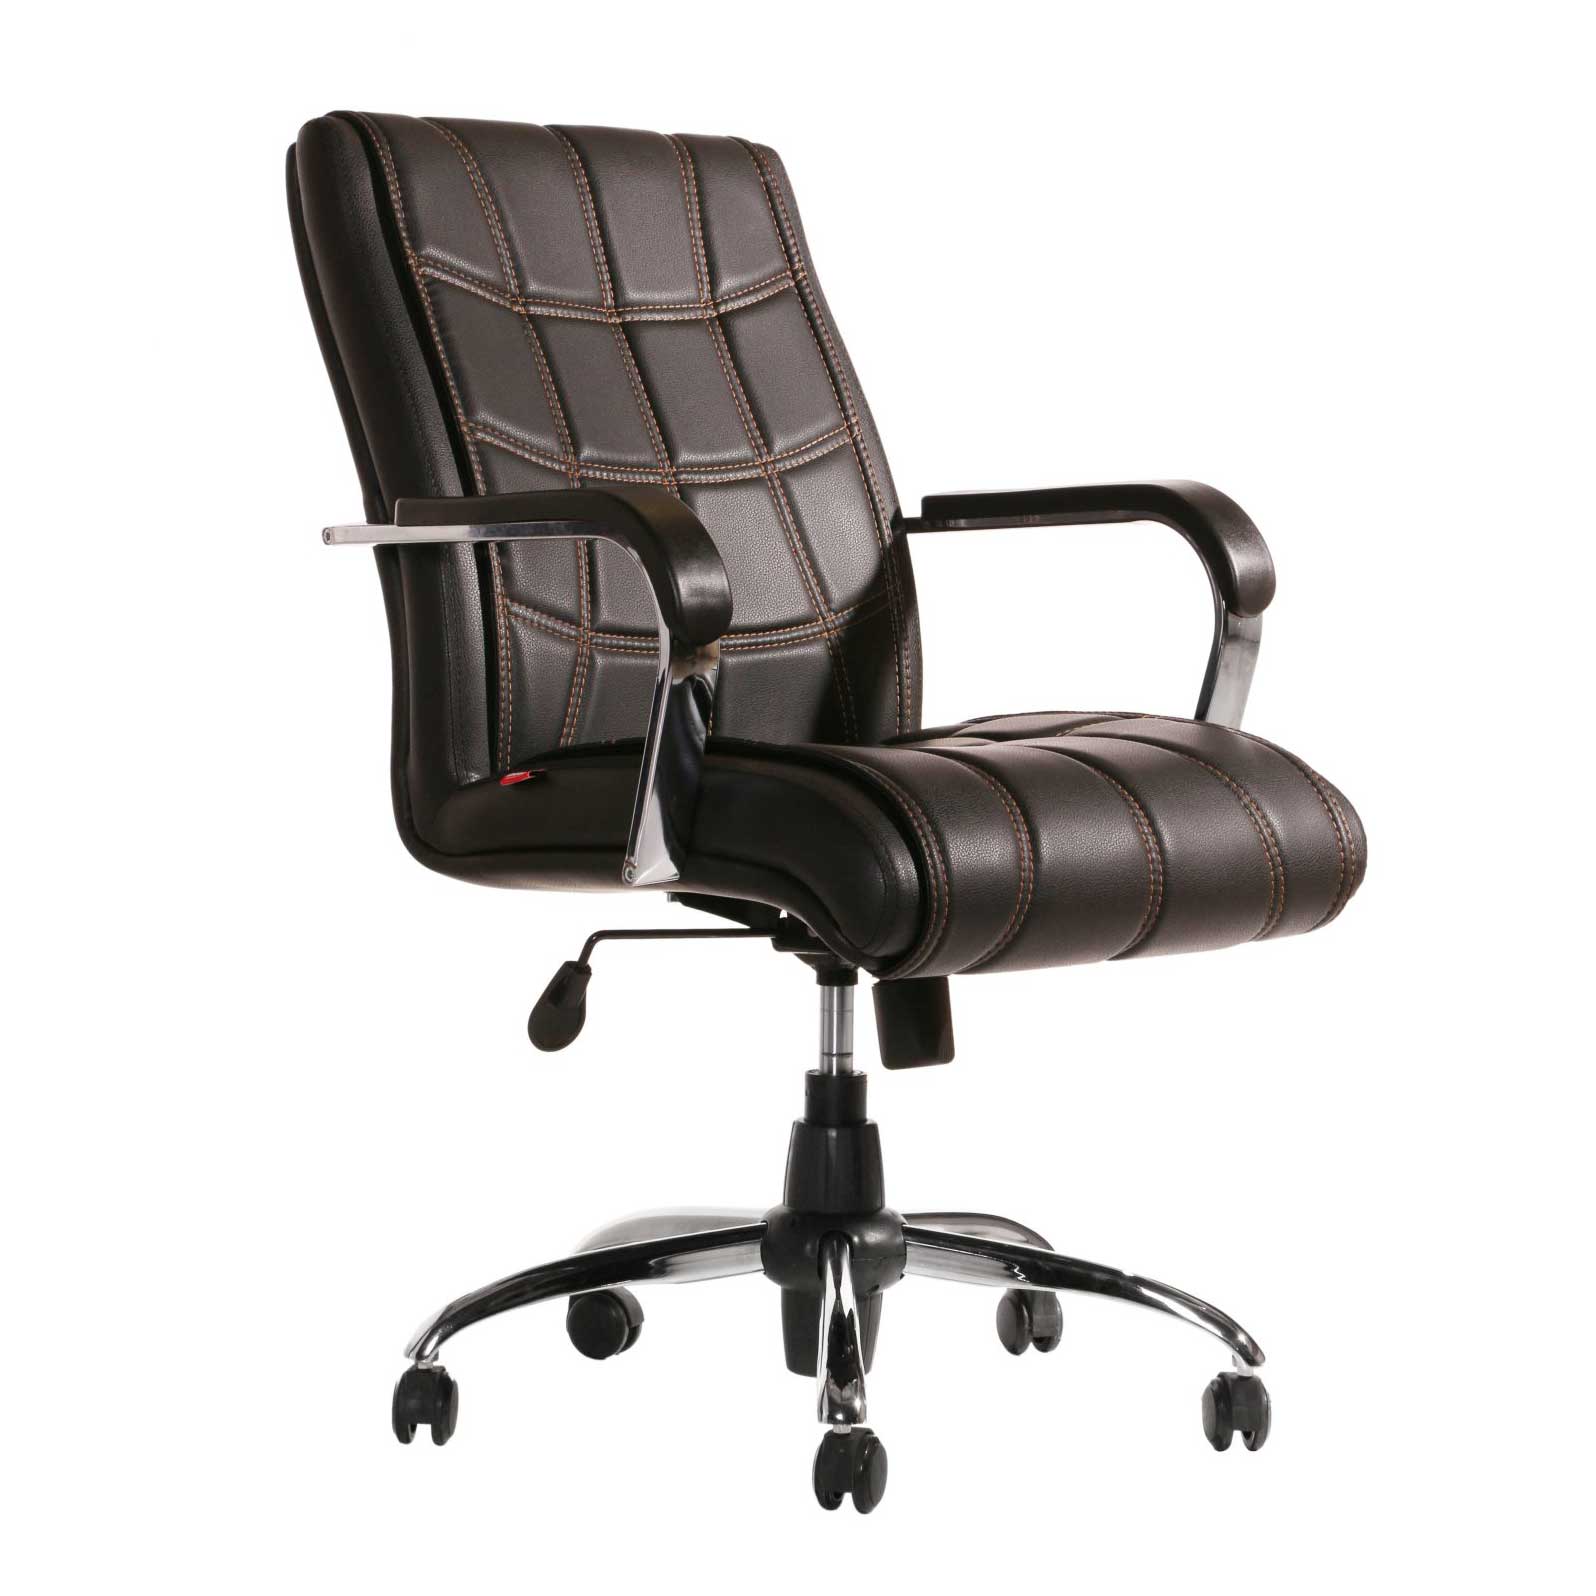 صندلی مدیریتی چوب فروش – مدل K135